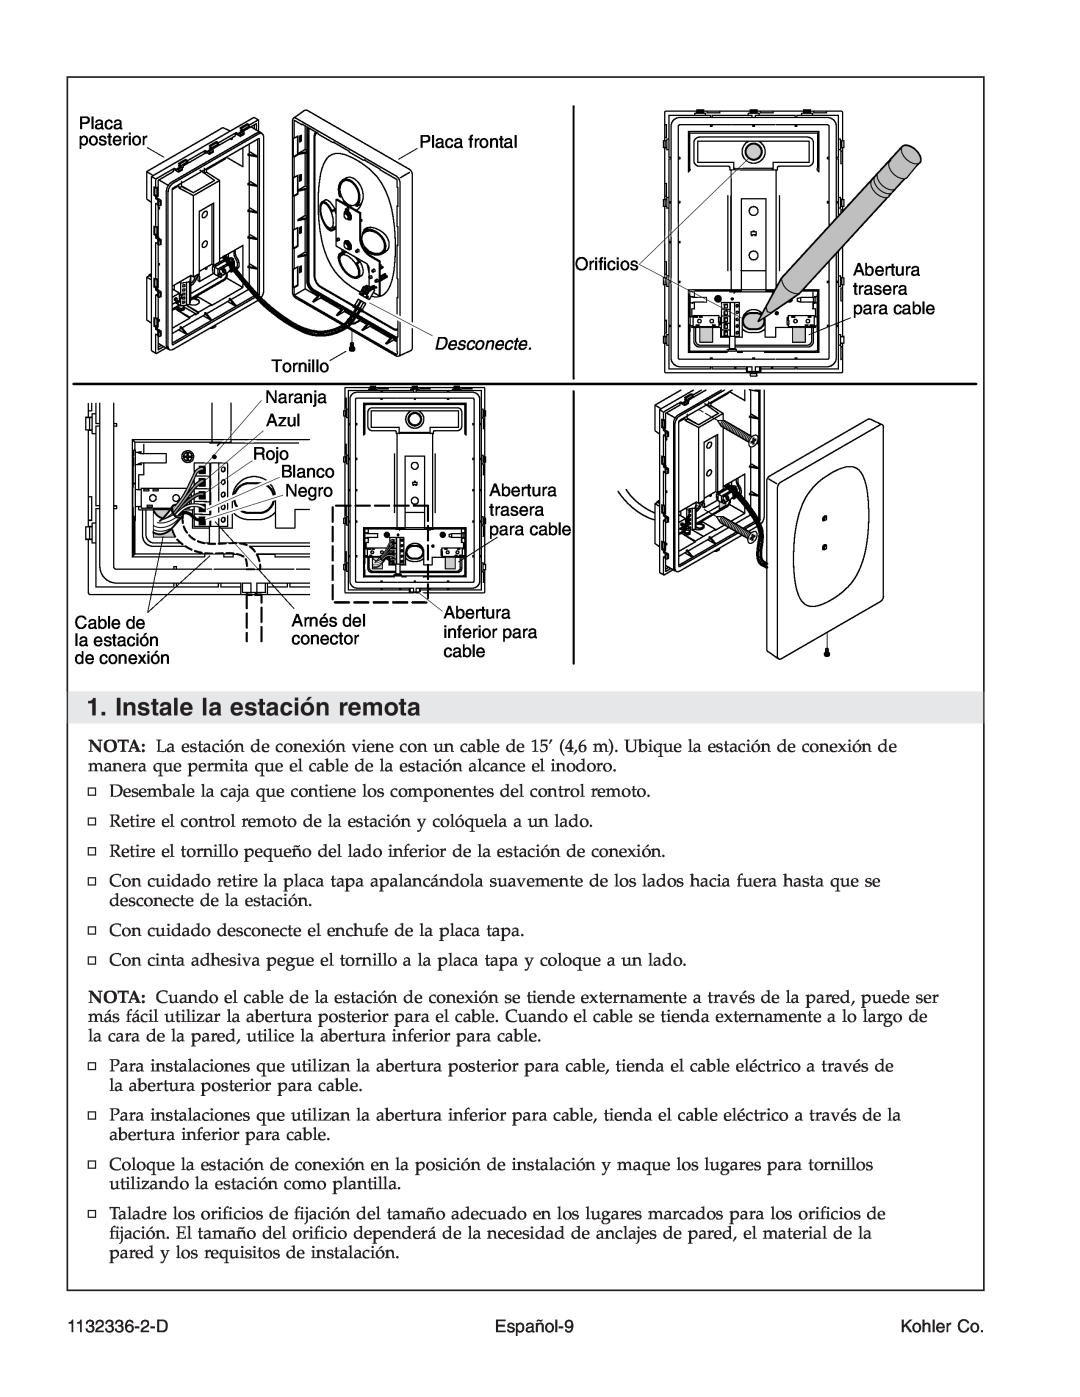 Kohler K-3900 manual Instale la estación remota, Desconecte, Español-9, 1132336-2-D, Kohler Co 